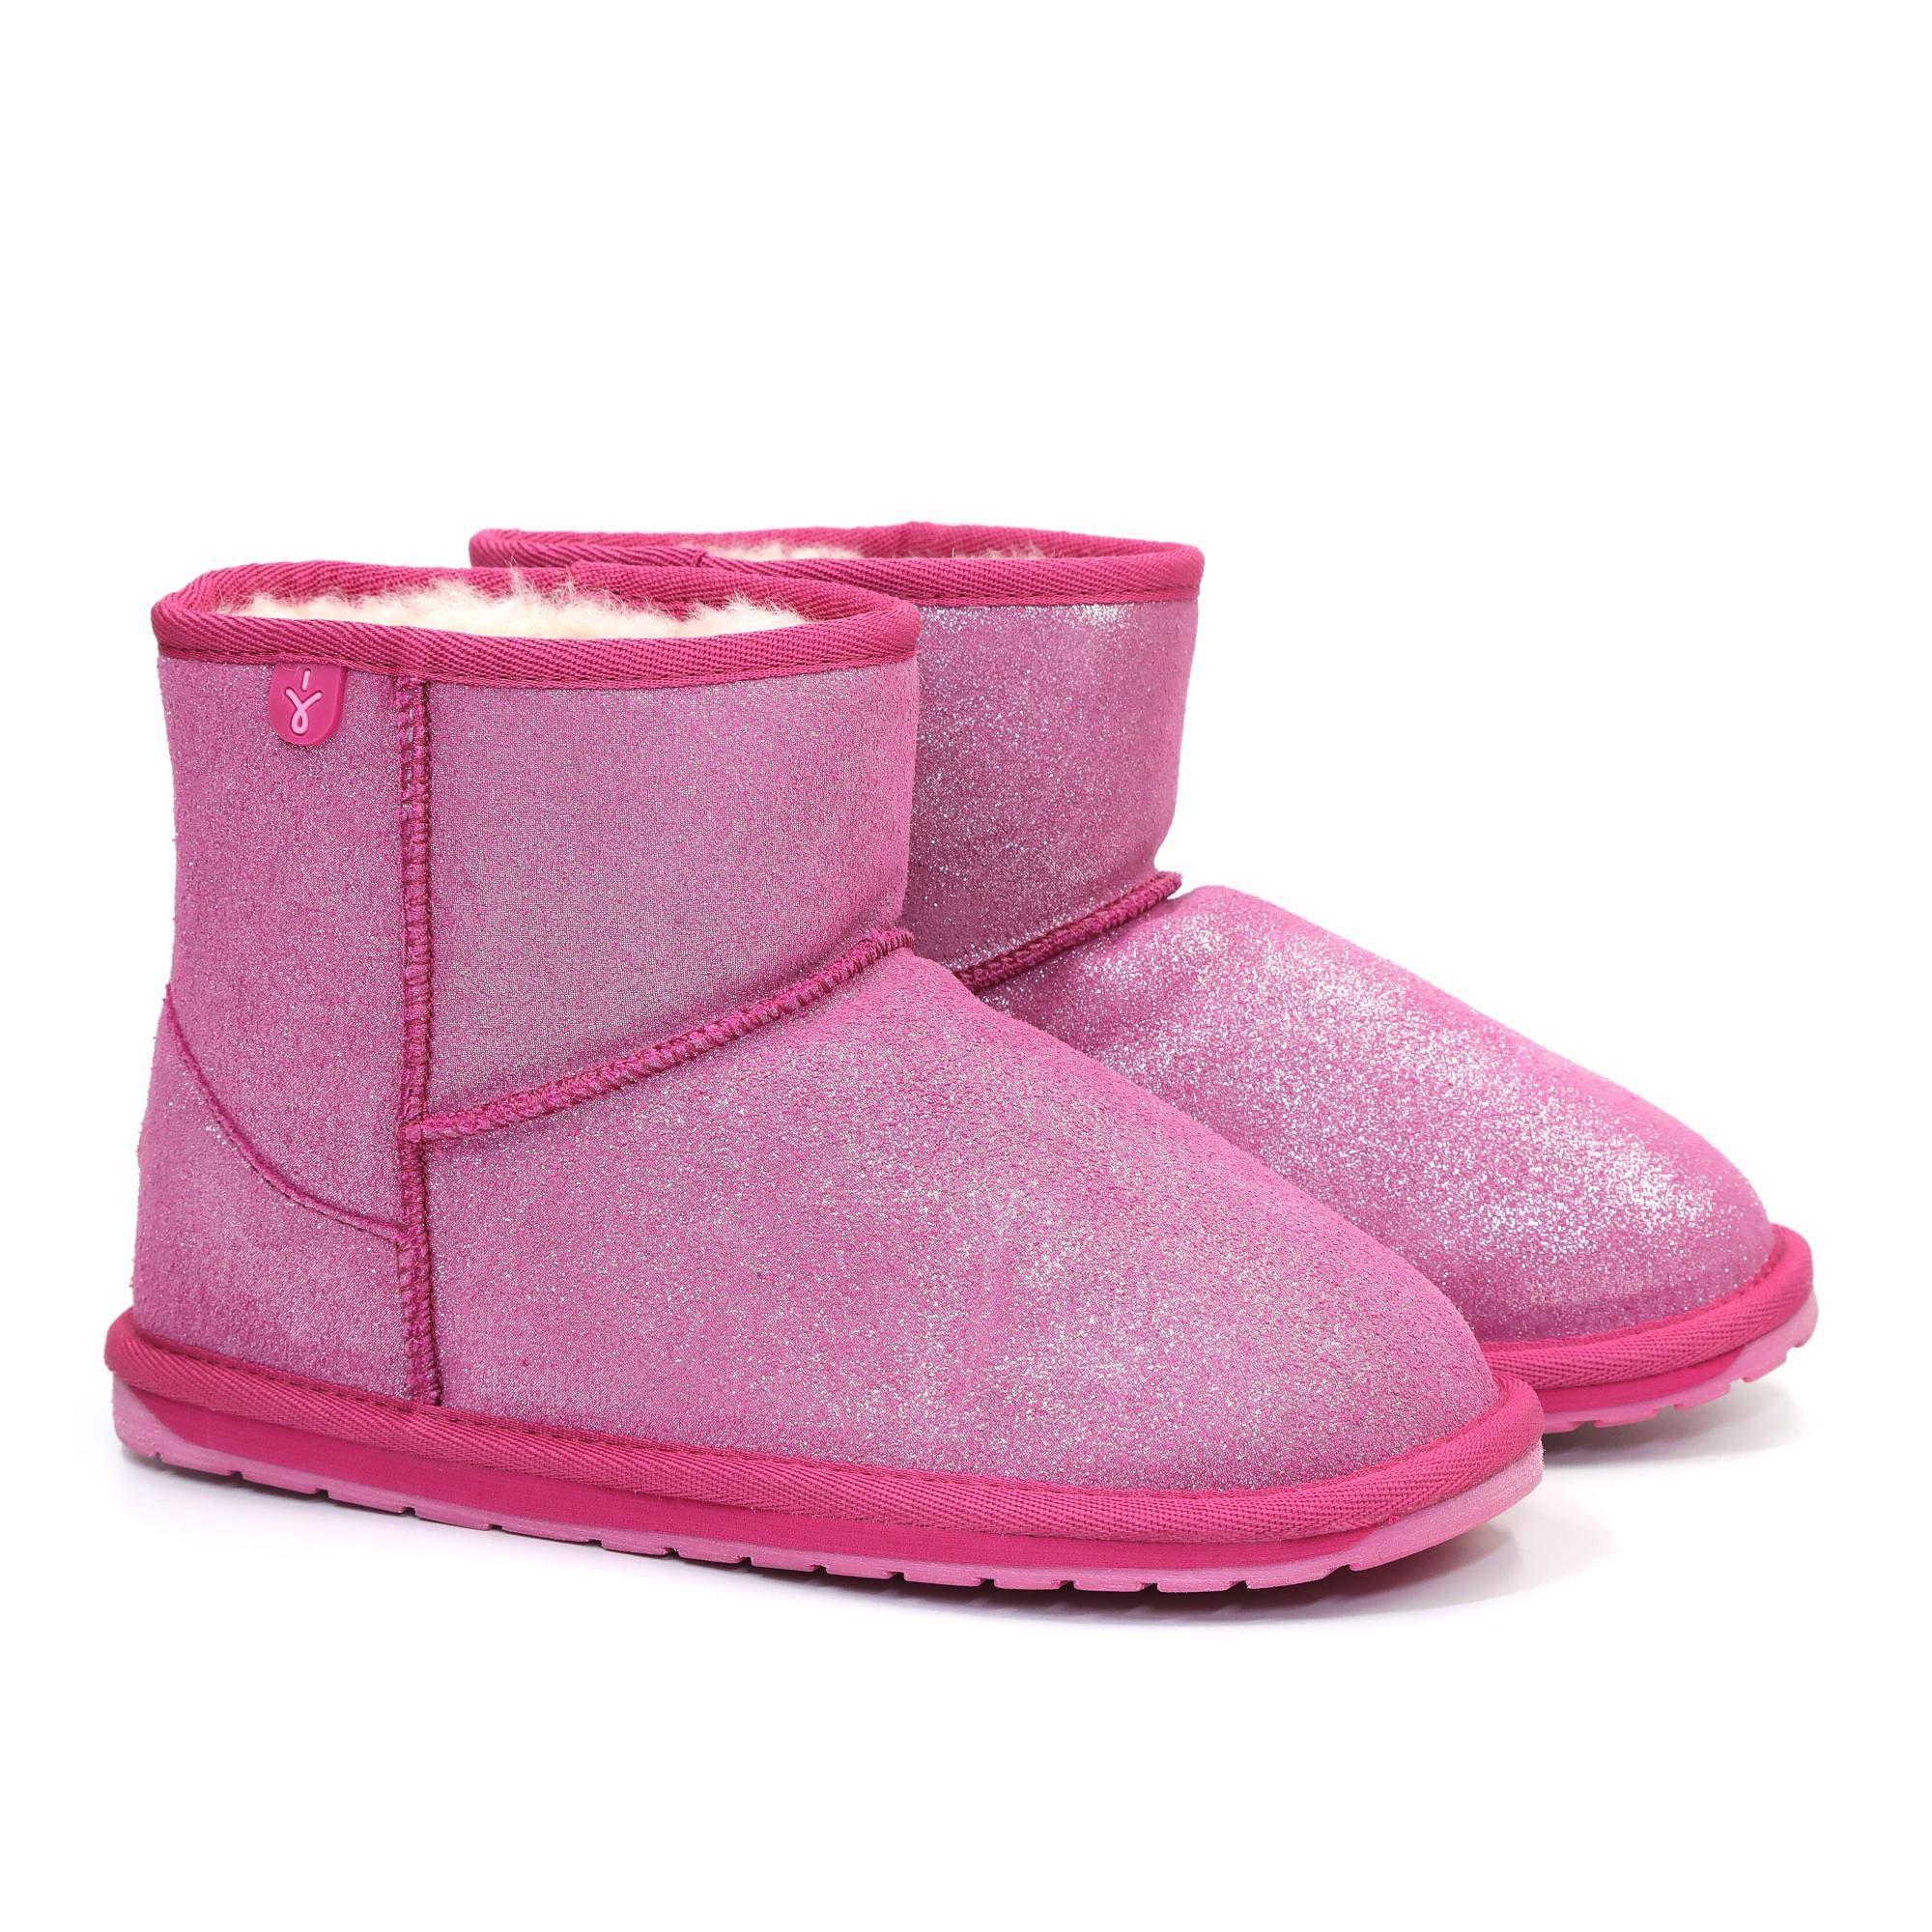 Детские ботинки из овчины (угги) EMU Australia, розовые